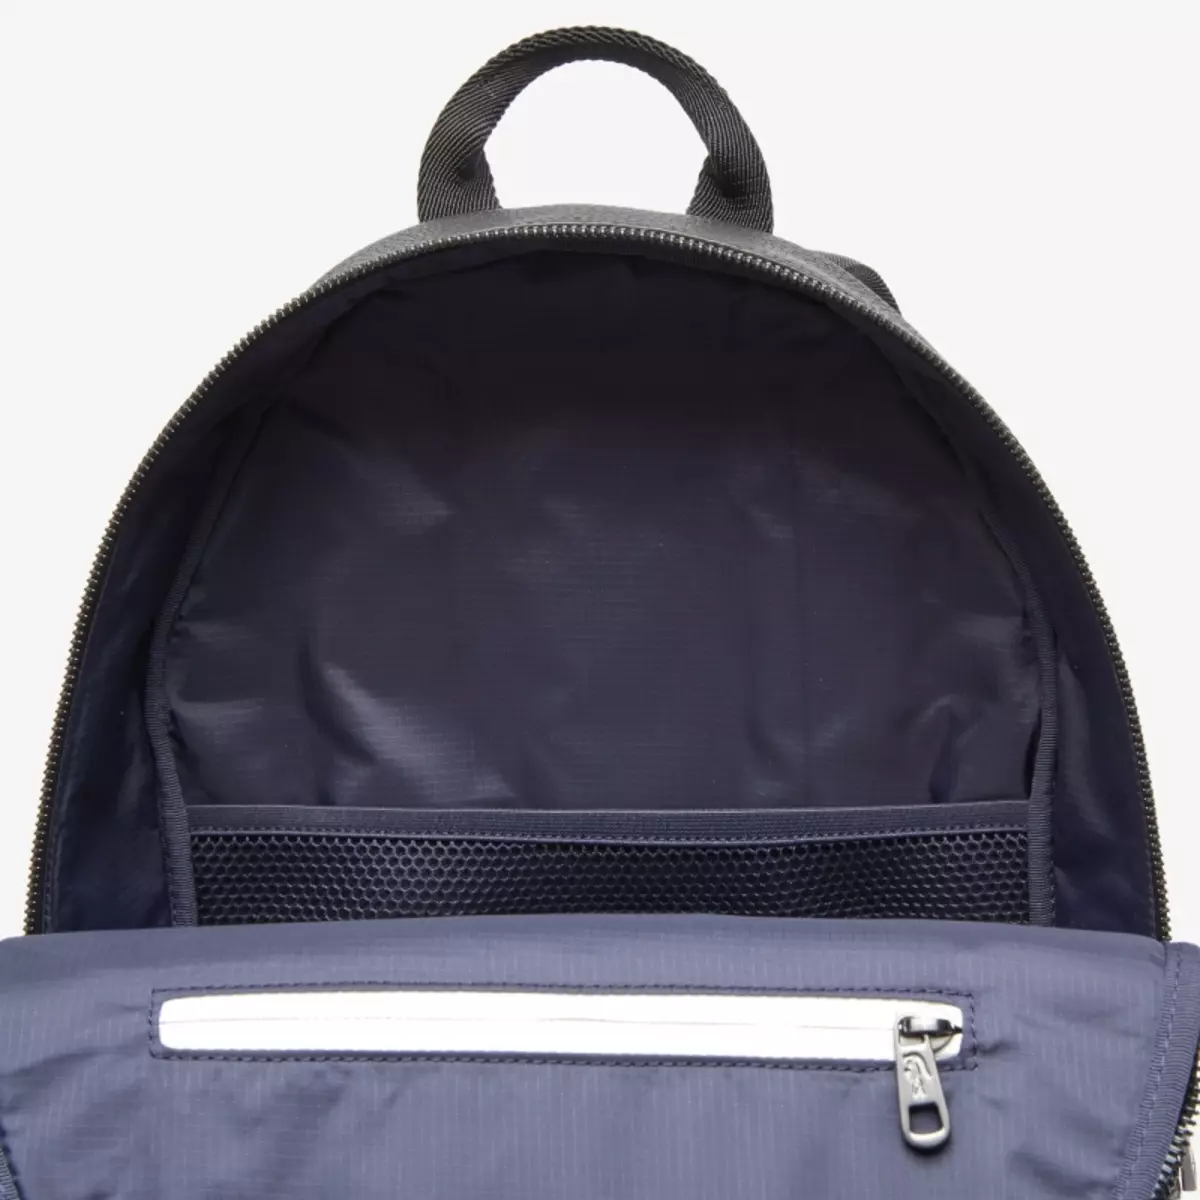 กระเป๋าเป้ LACOSTE: สตรีและบุรุษ, สีดำและสีน้ำเงินสีเขียว, กระเป๋าเป้หนังอื่น ๆ 15408_23